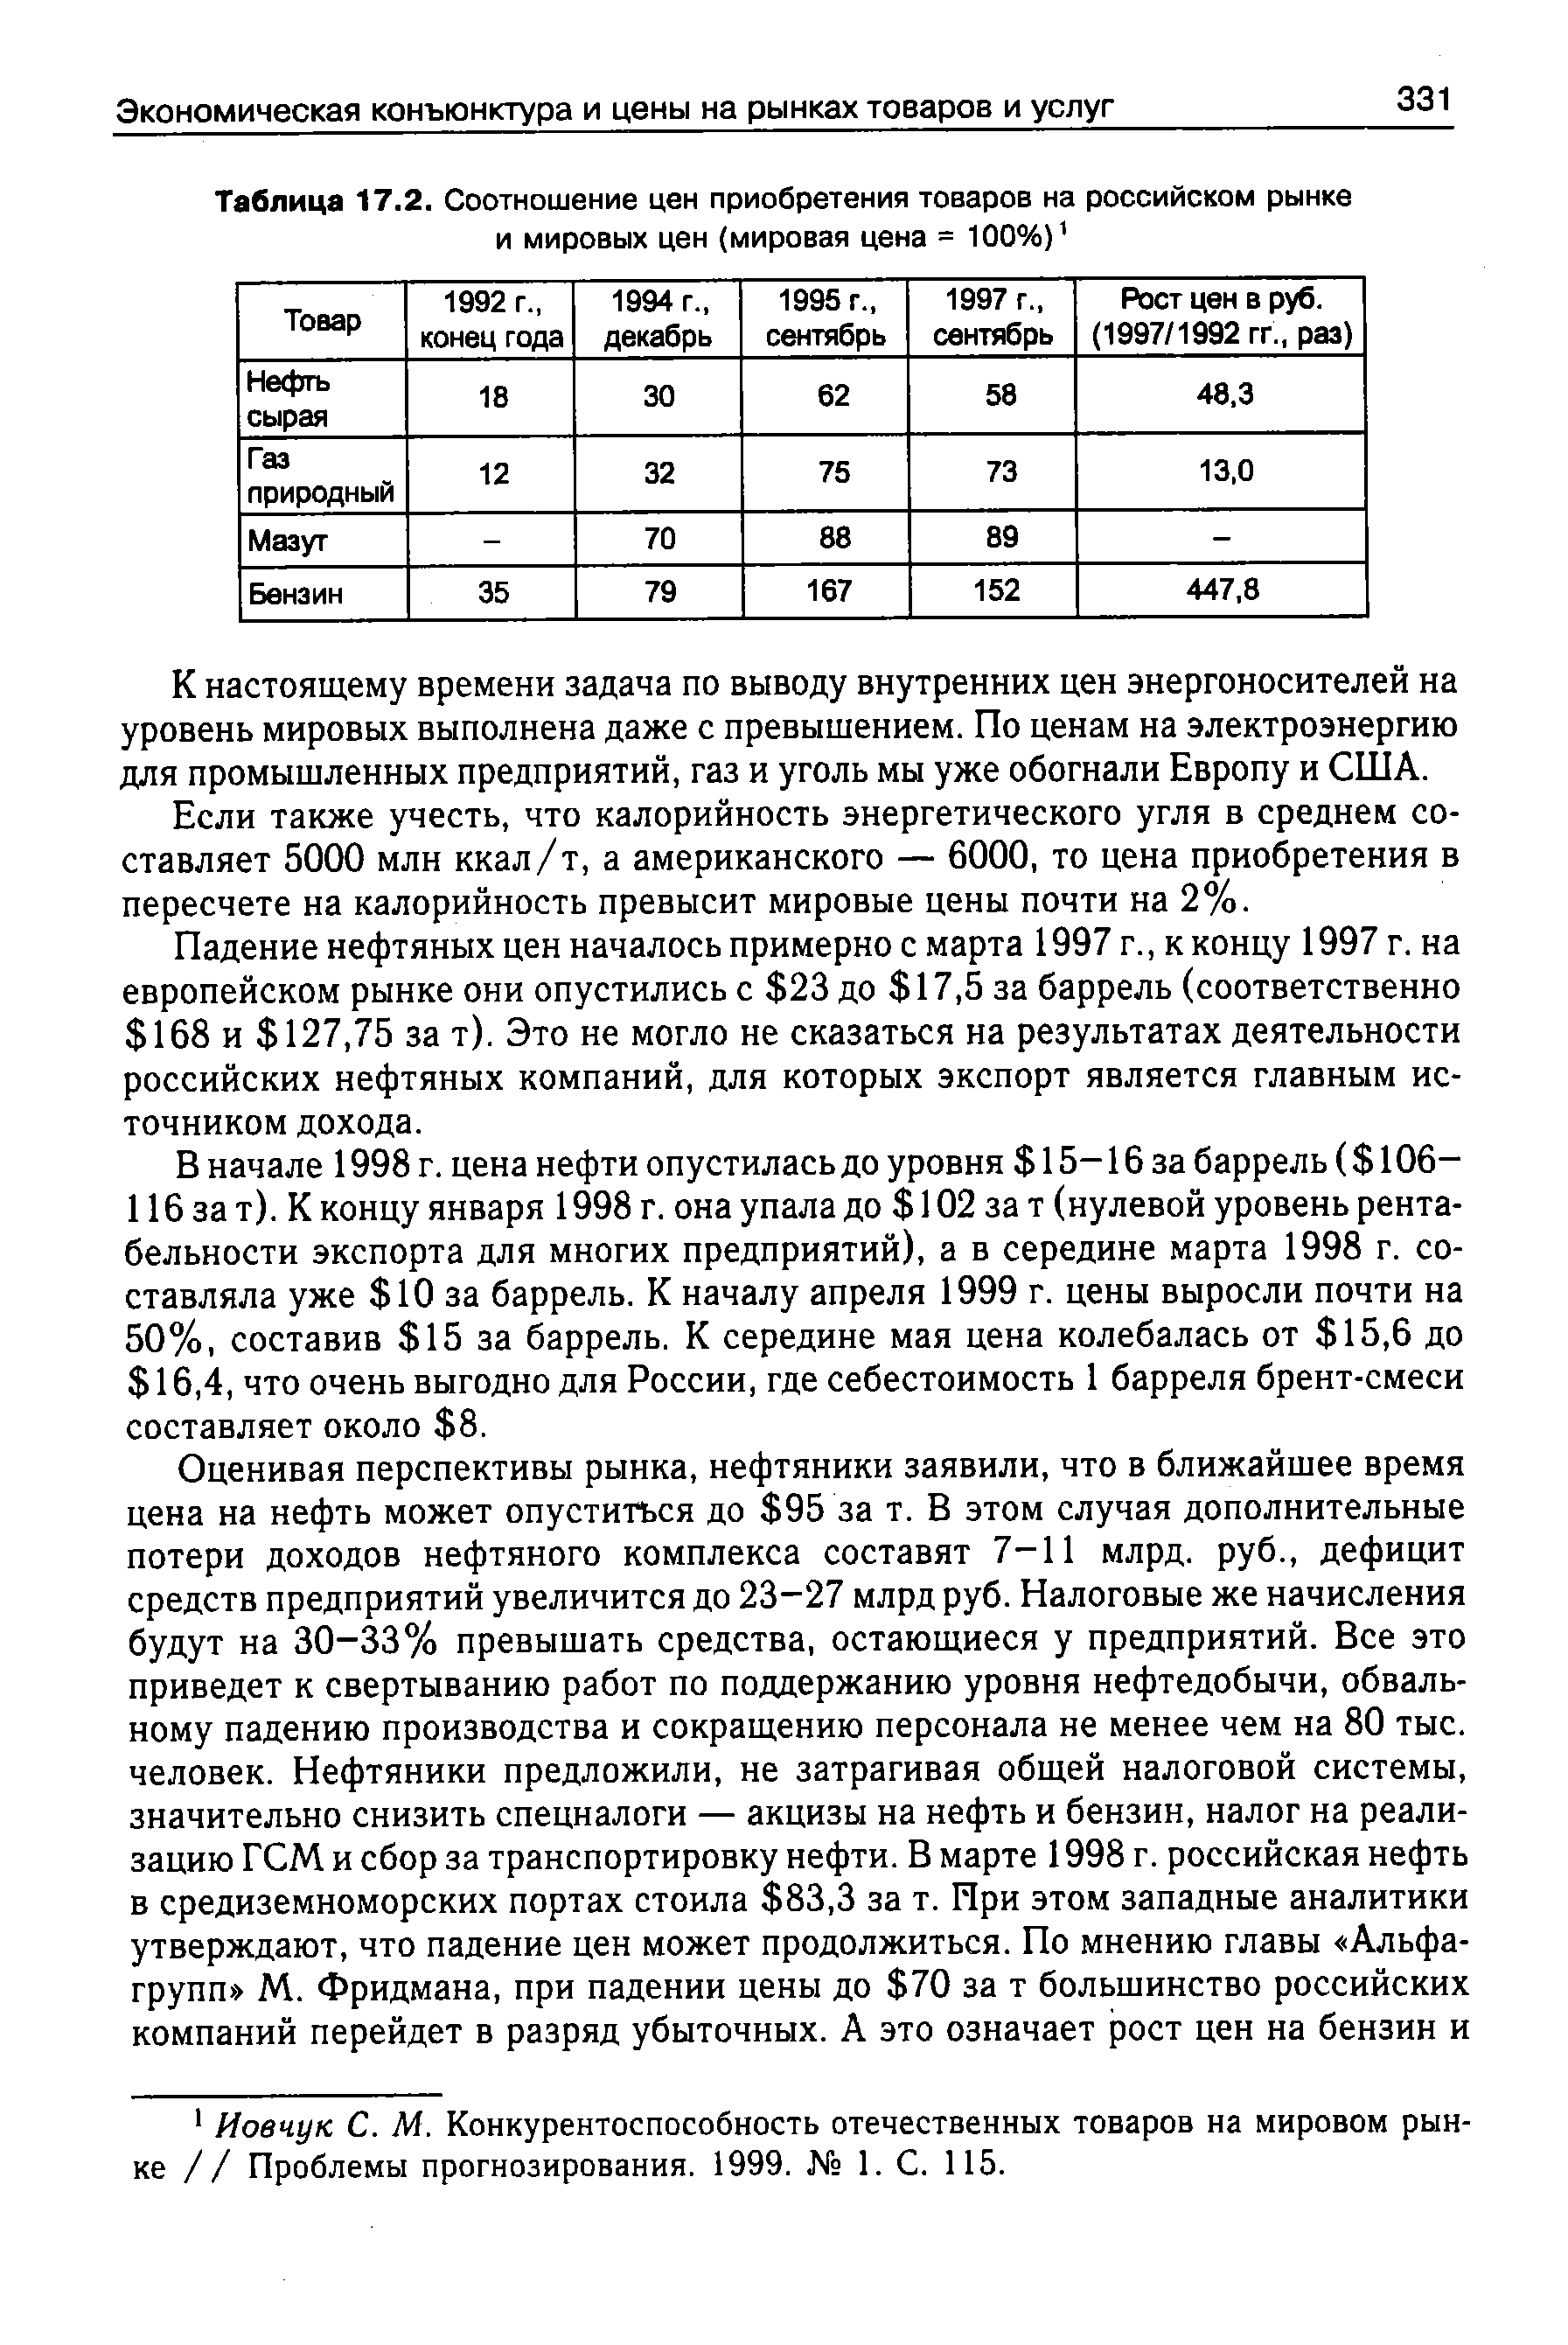 Таблица 17.2. Соотношение цен приобретения товаров на российском рынке и мировых цен (мировая цена = 100%)1
